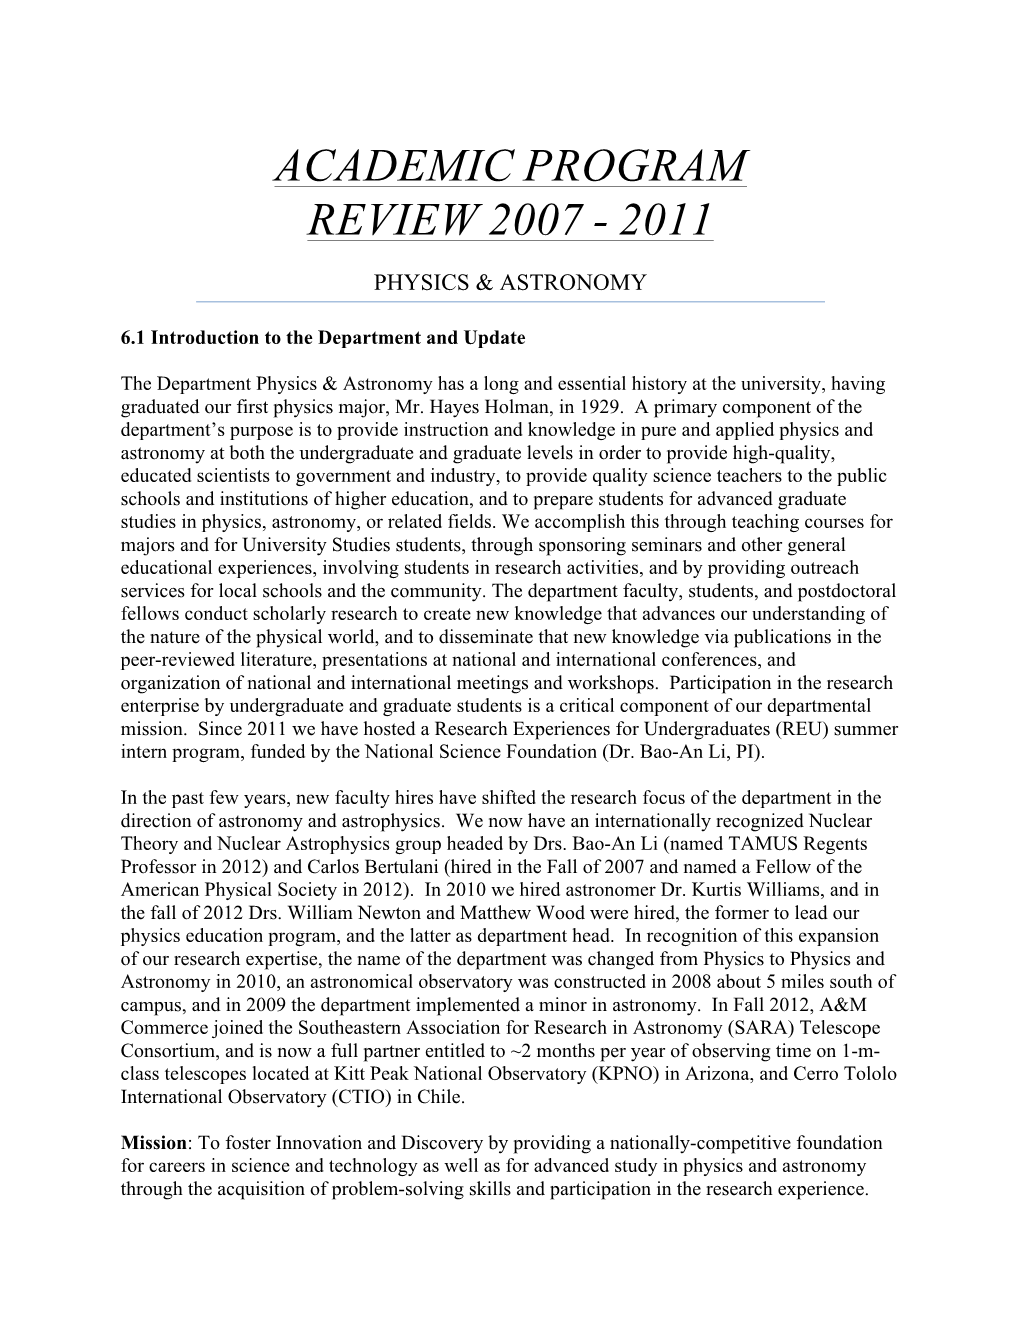 Academic Program Review 2007 - 2011